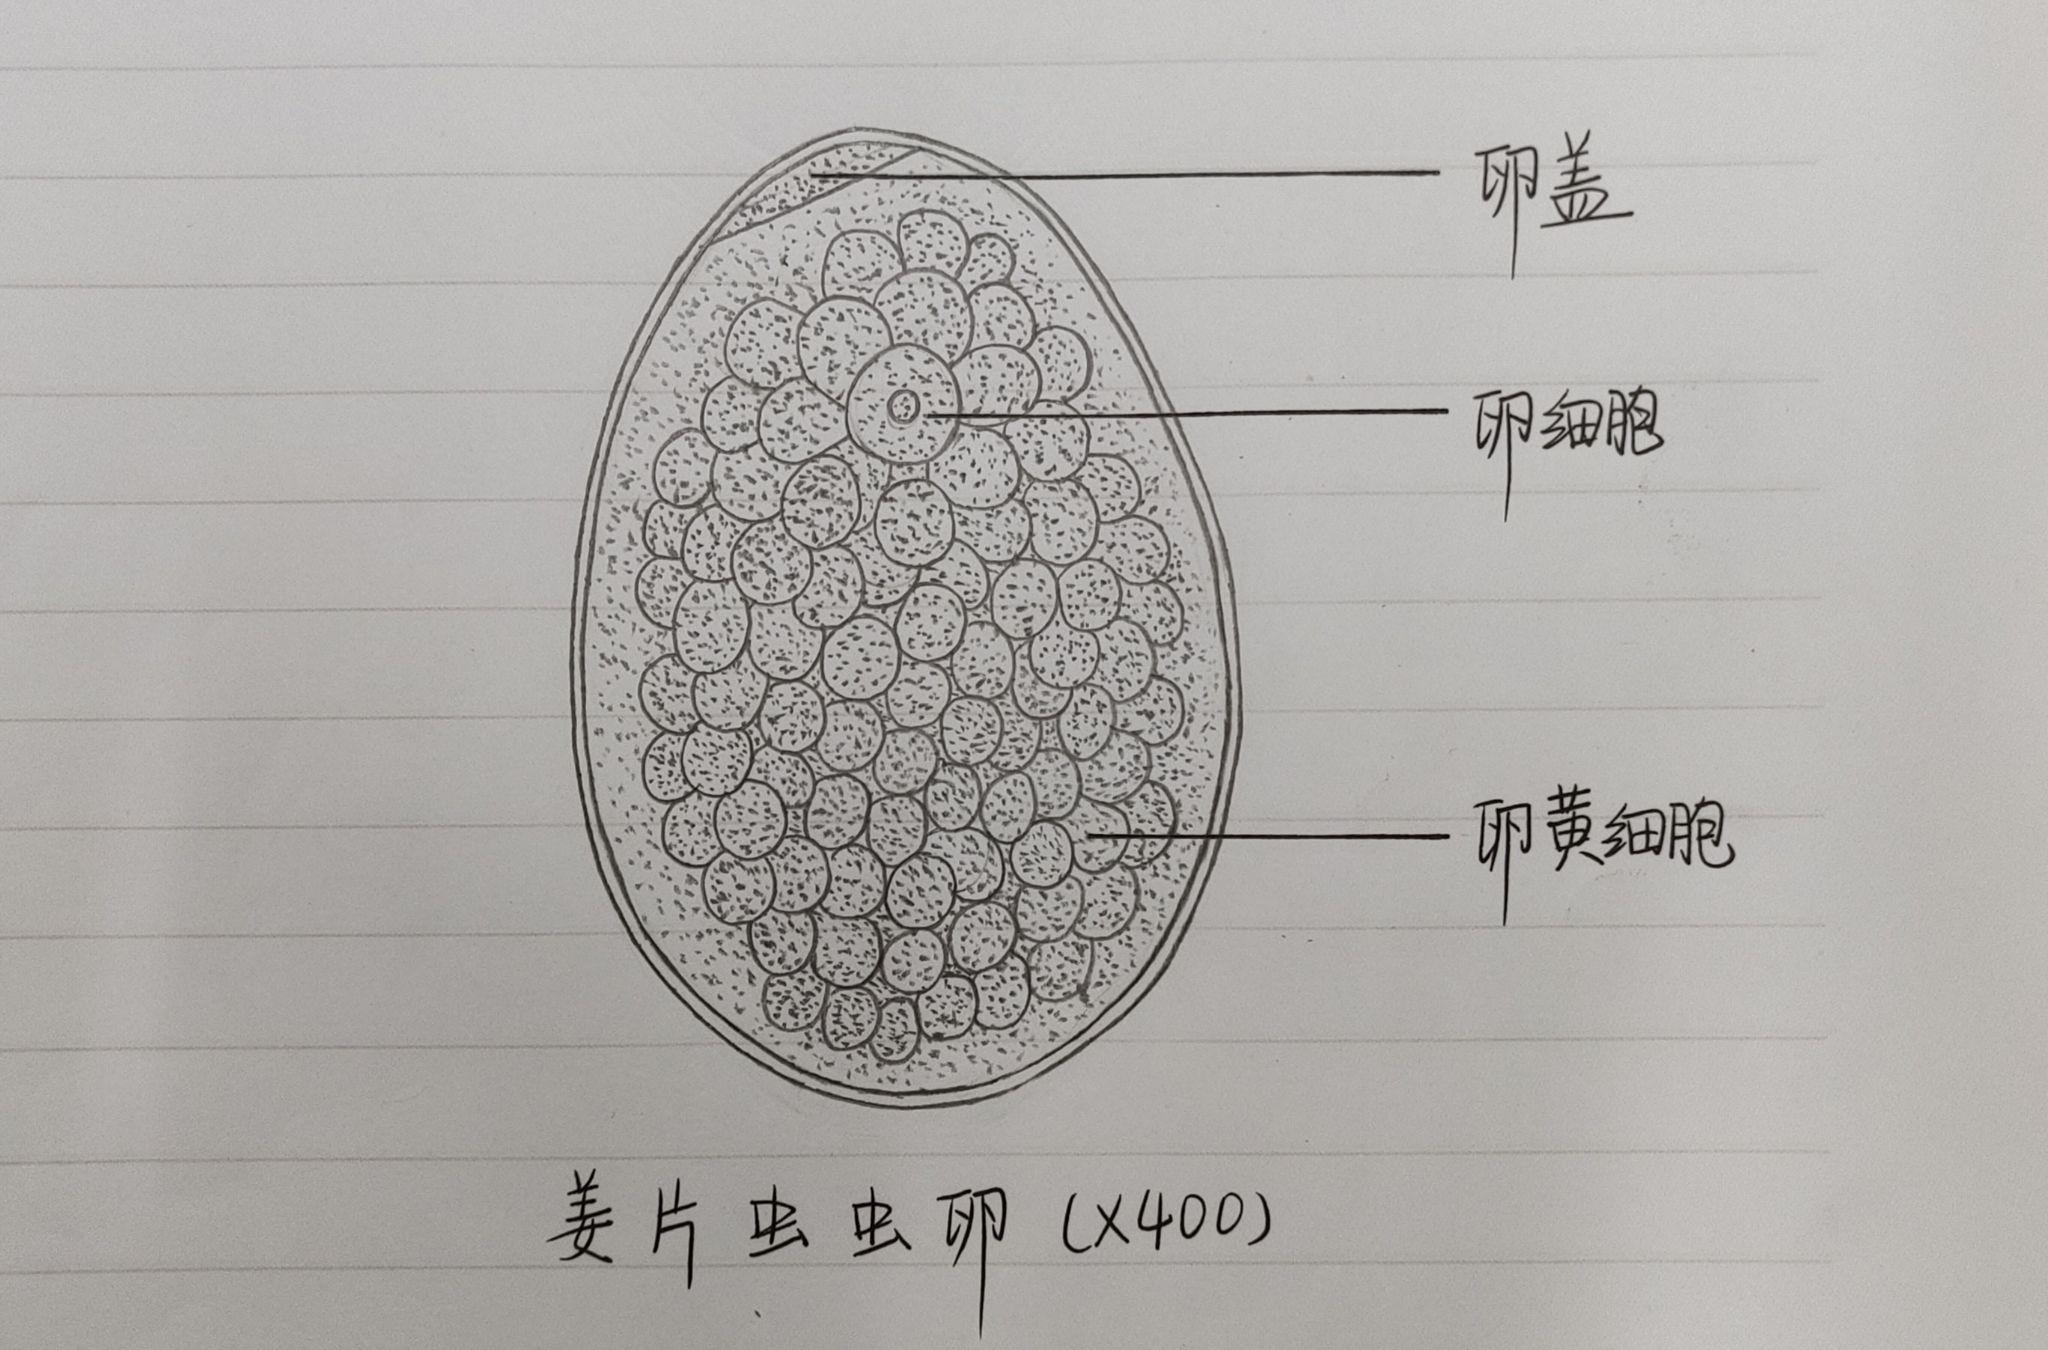 曼氏迭宫绦虫卵(虫卵特点:两端较尖,中间较宽,虫卵内含有较多的卵黄